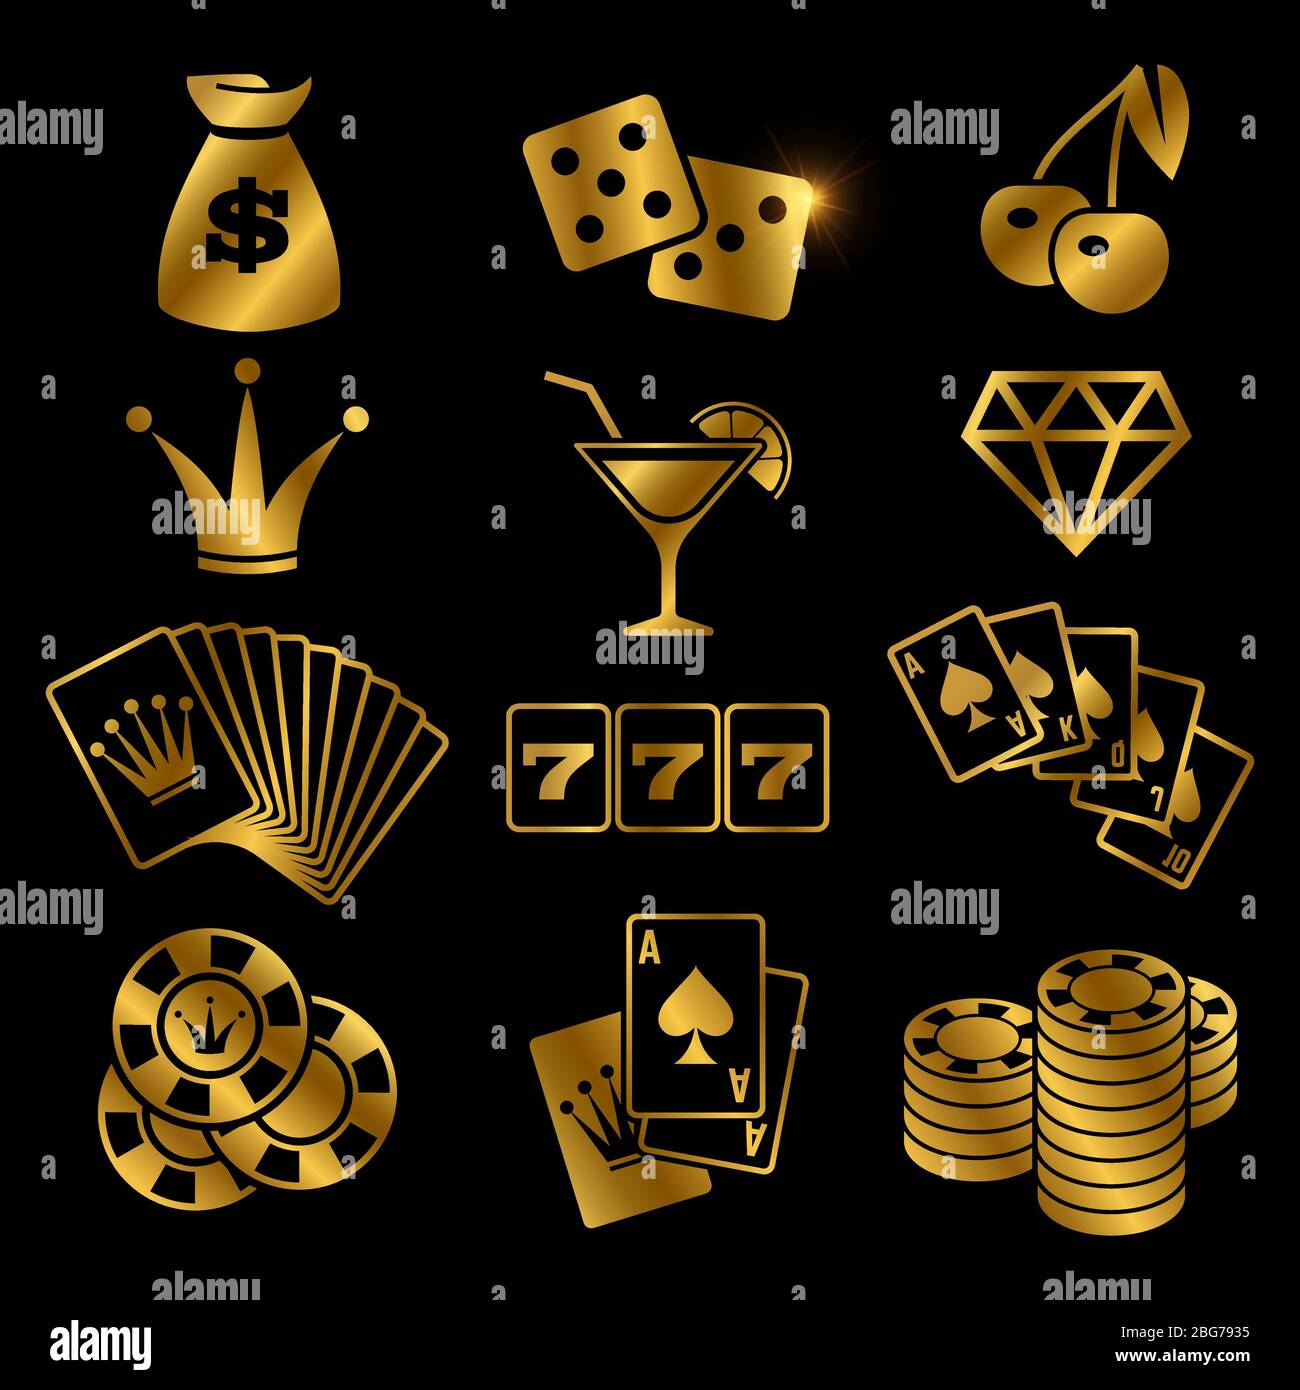 Với những biểu tượng may mắn vàng óng ánh này, bạn sẽ tìm thấy niềm vui hạnh phúc trong các trò chơi đánh bạc. Hãy xem ảnh và cảm nhận sự thu hút của những con số chẳng mong chờ đến nhưng lại đem đến nhiều may mắn.